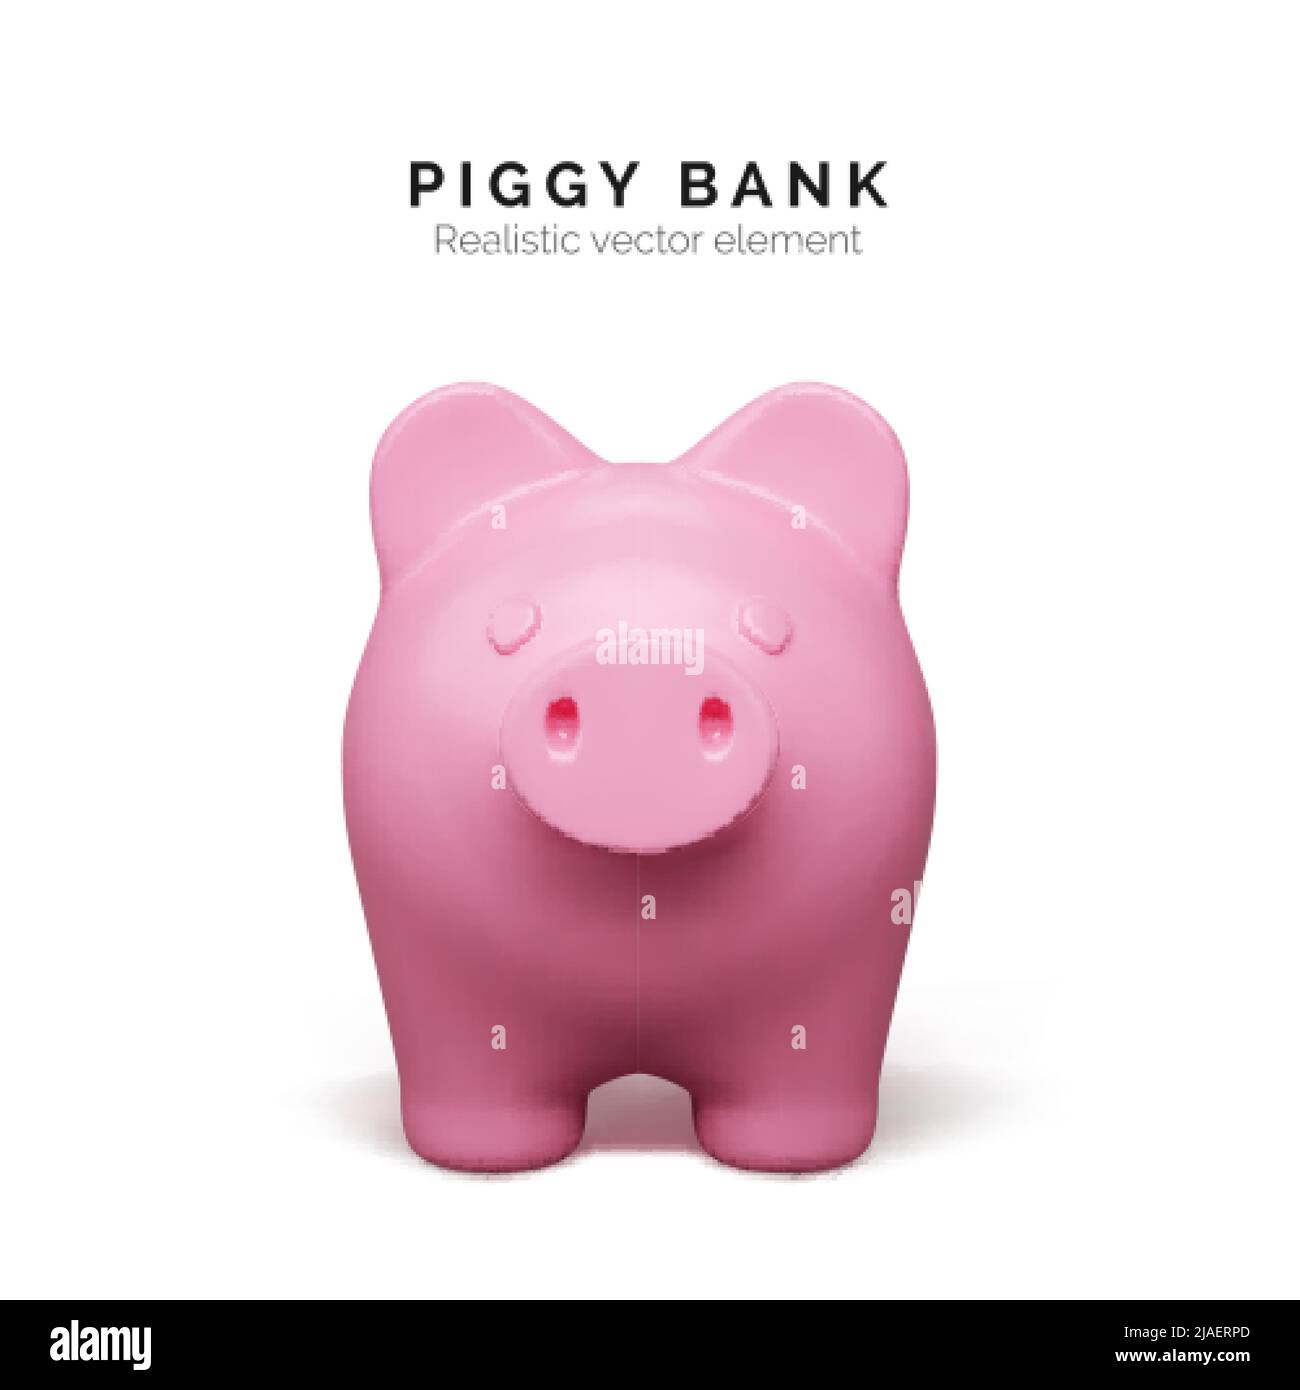 Vista frontal realista de cerdo rosa. Banco piggy aislado sobre fondo blanco. Concepto de banco piggy de depósito de dinero e inversión. Ilustración vectorial Ilustración del Vector